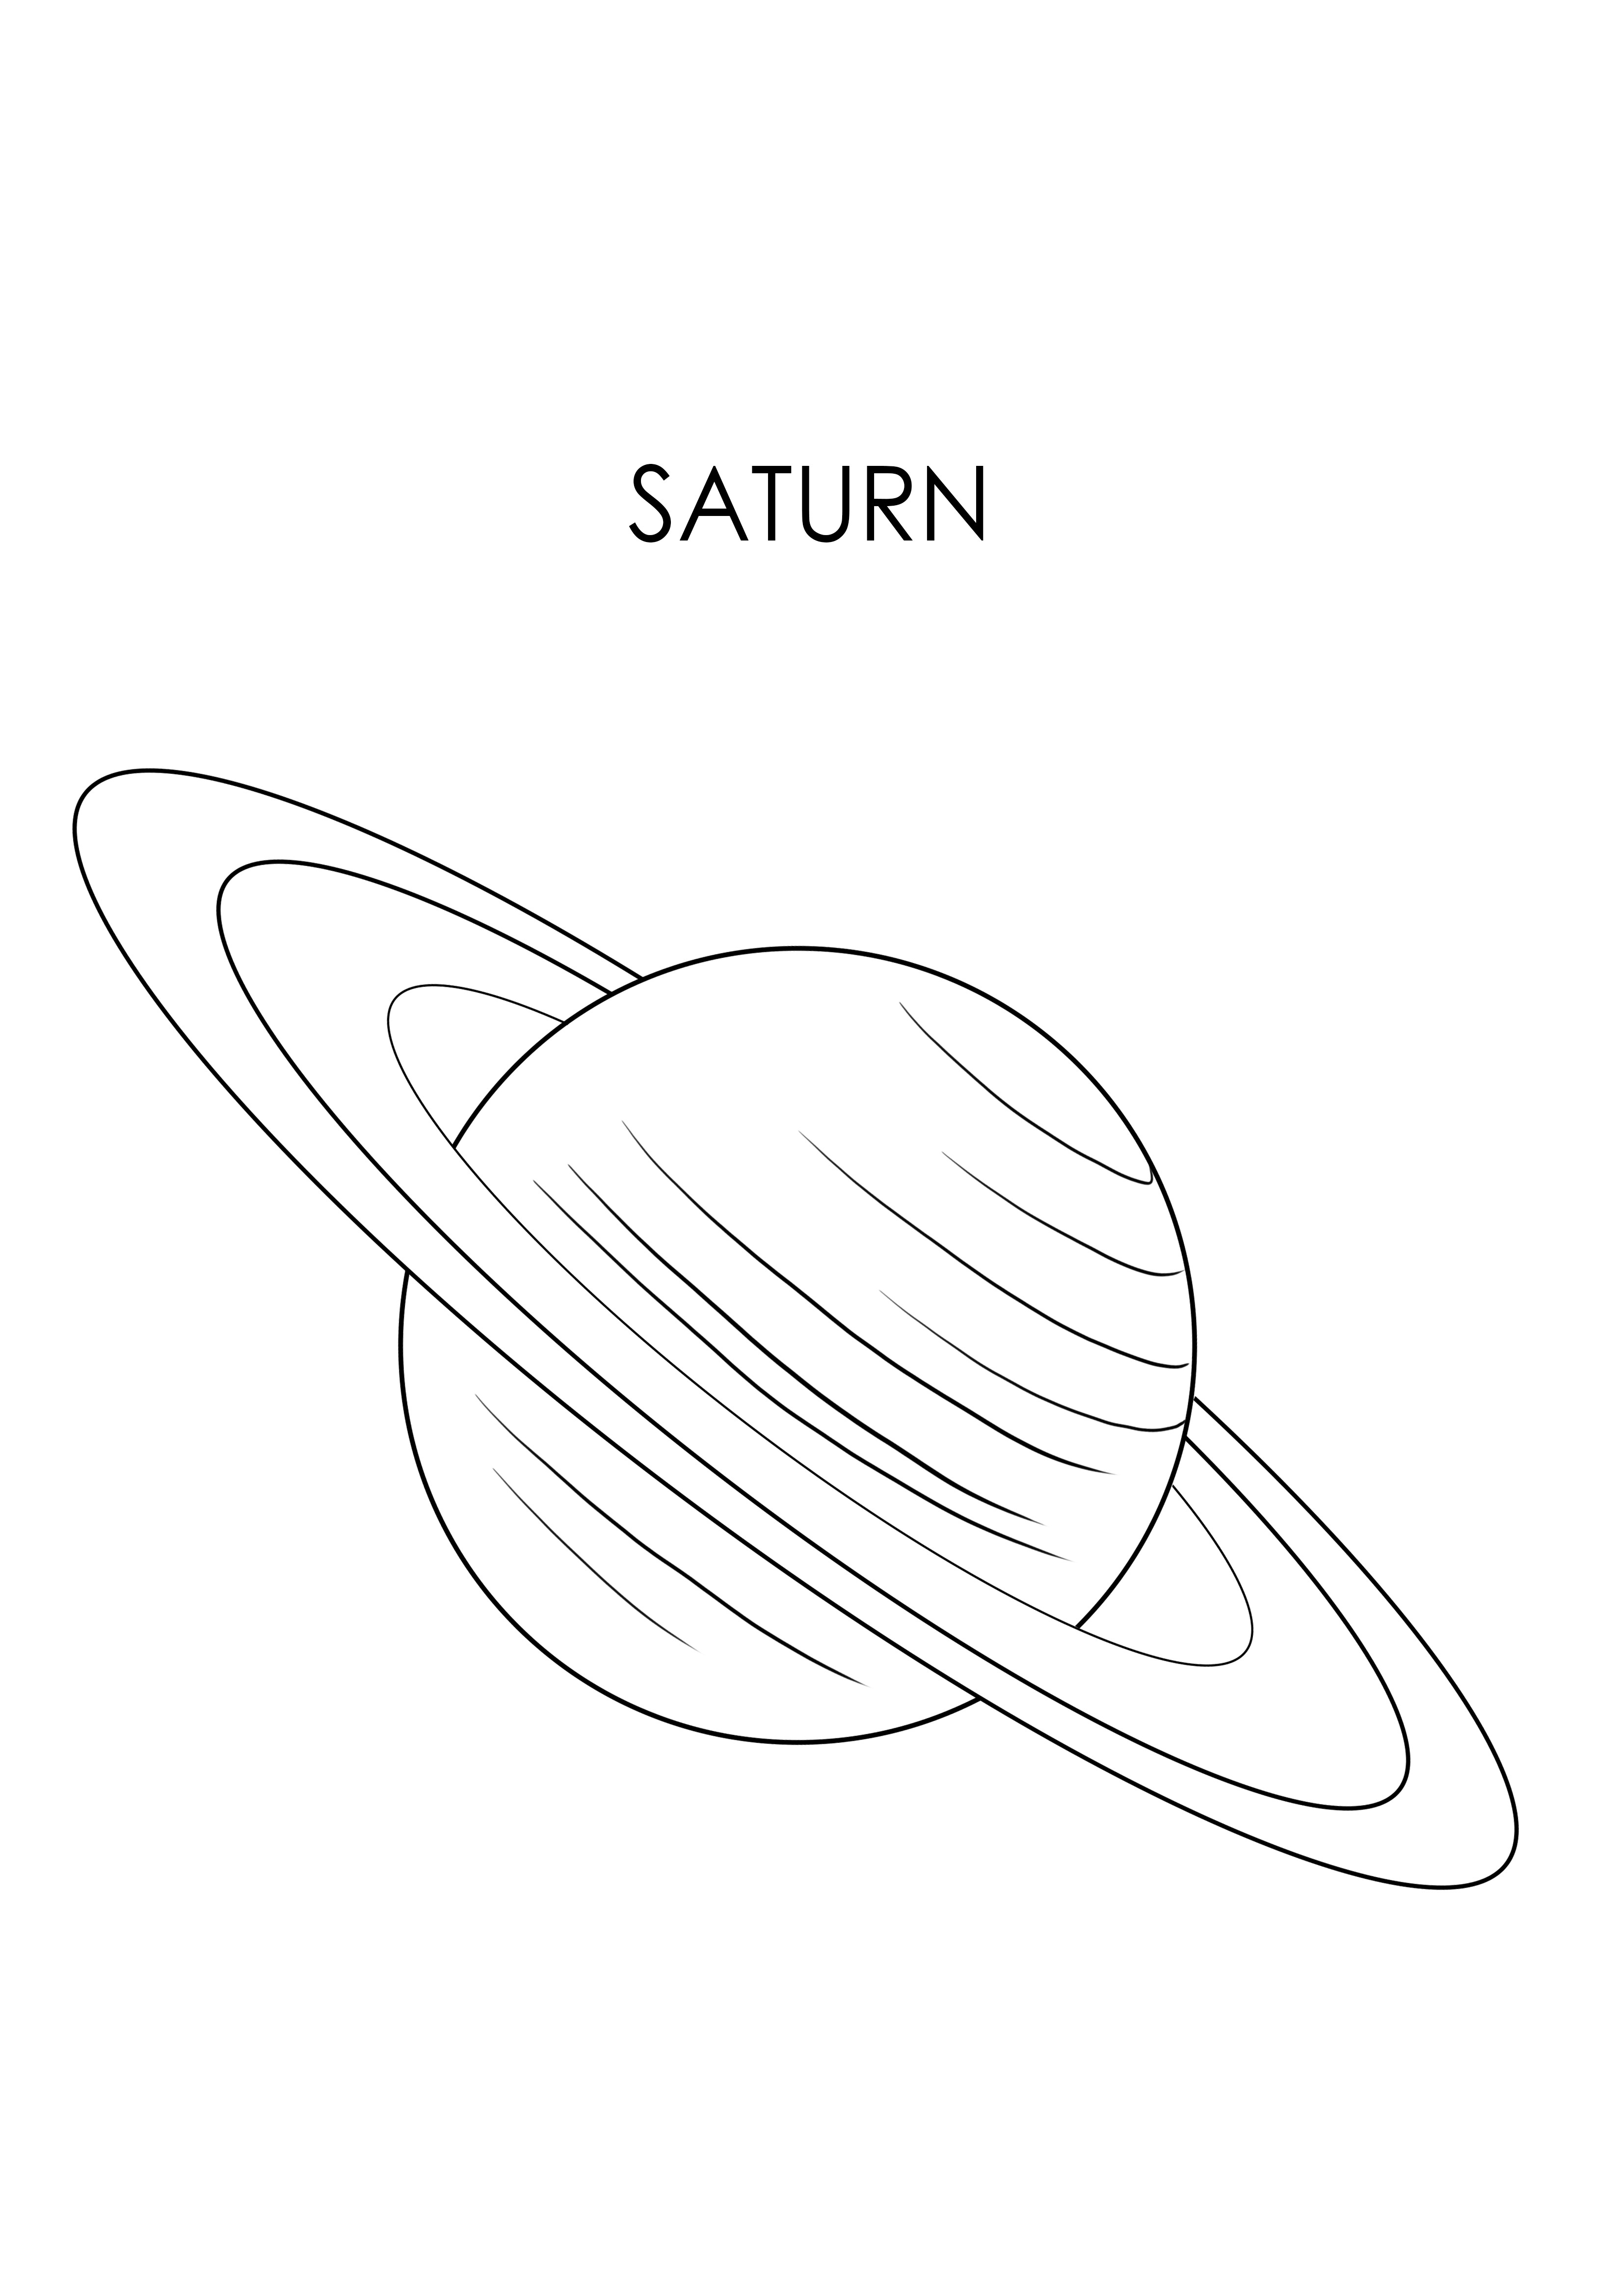 Planet Saturnus untuk diunduh secara gratis